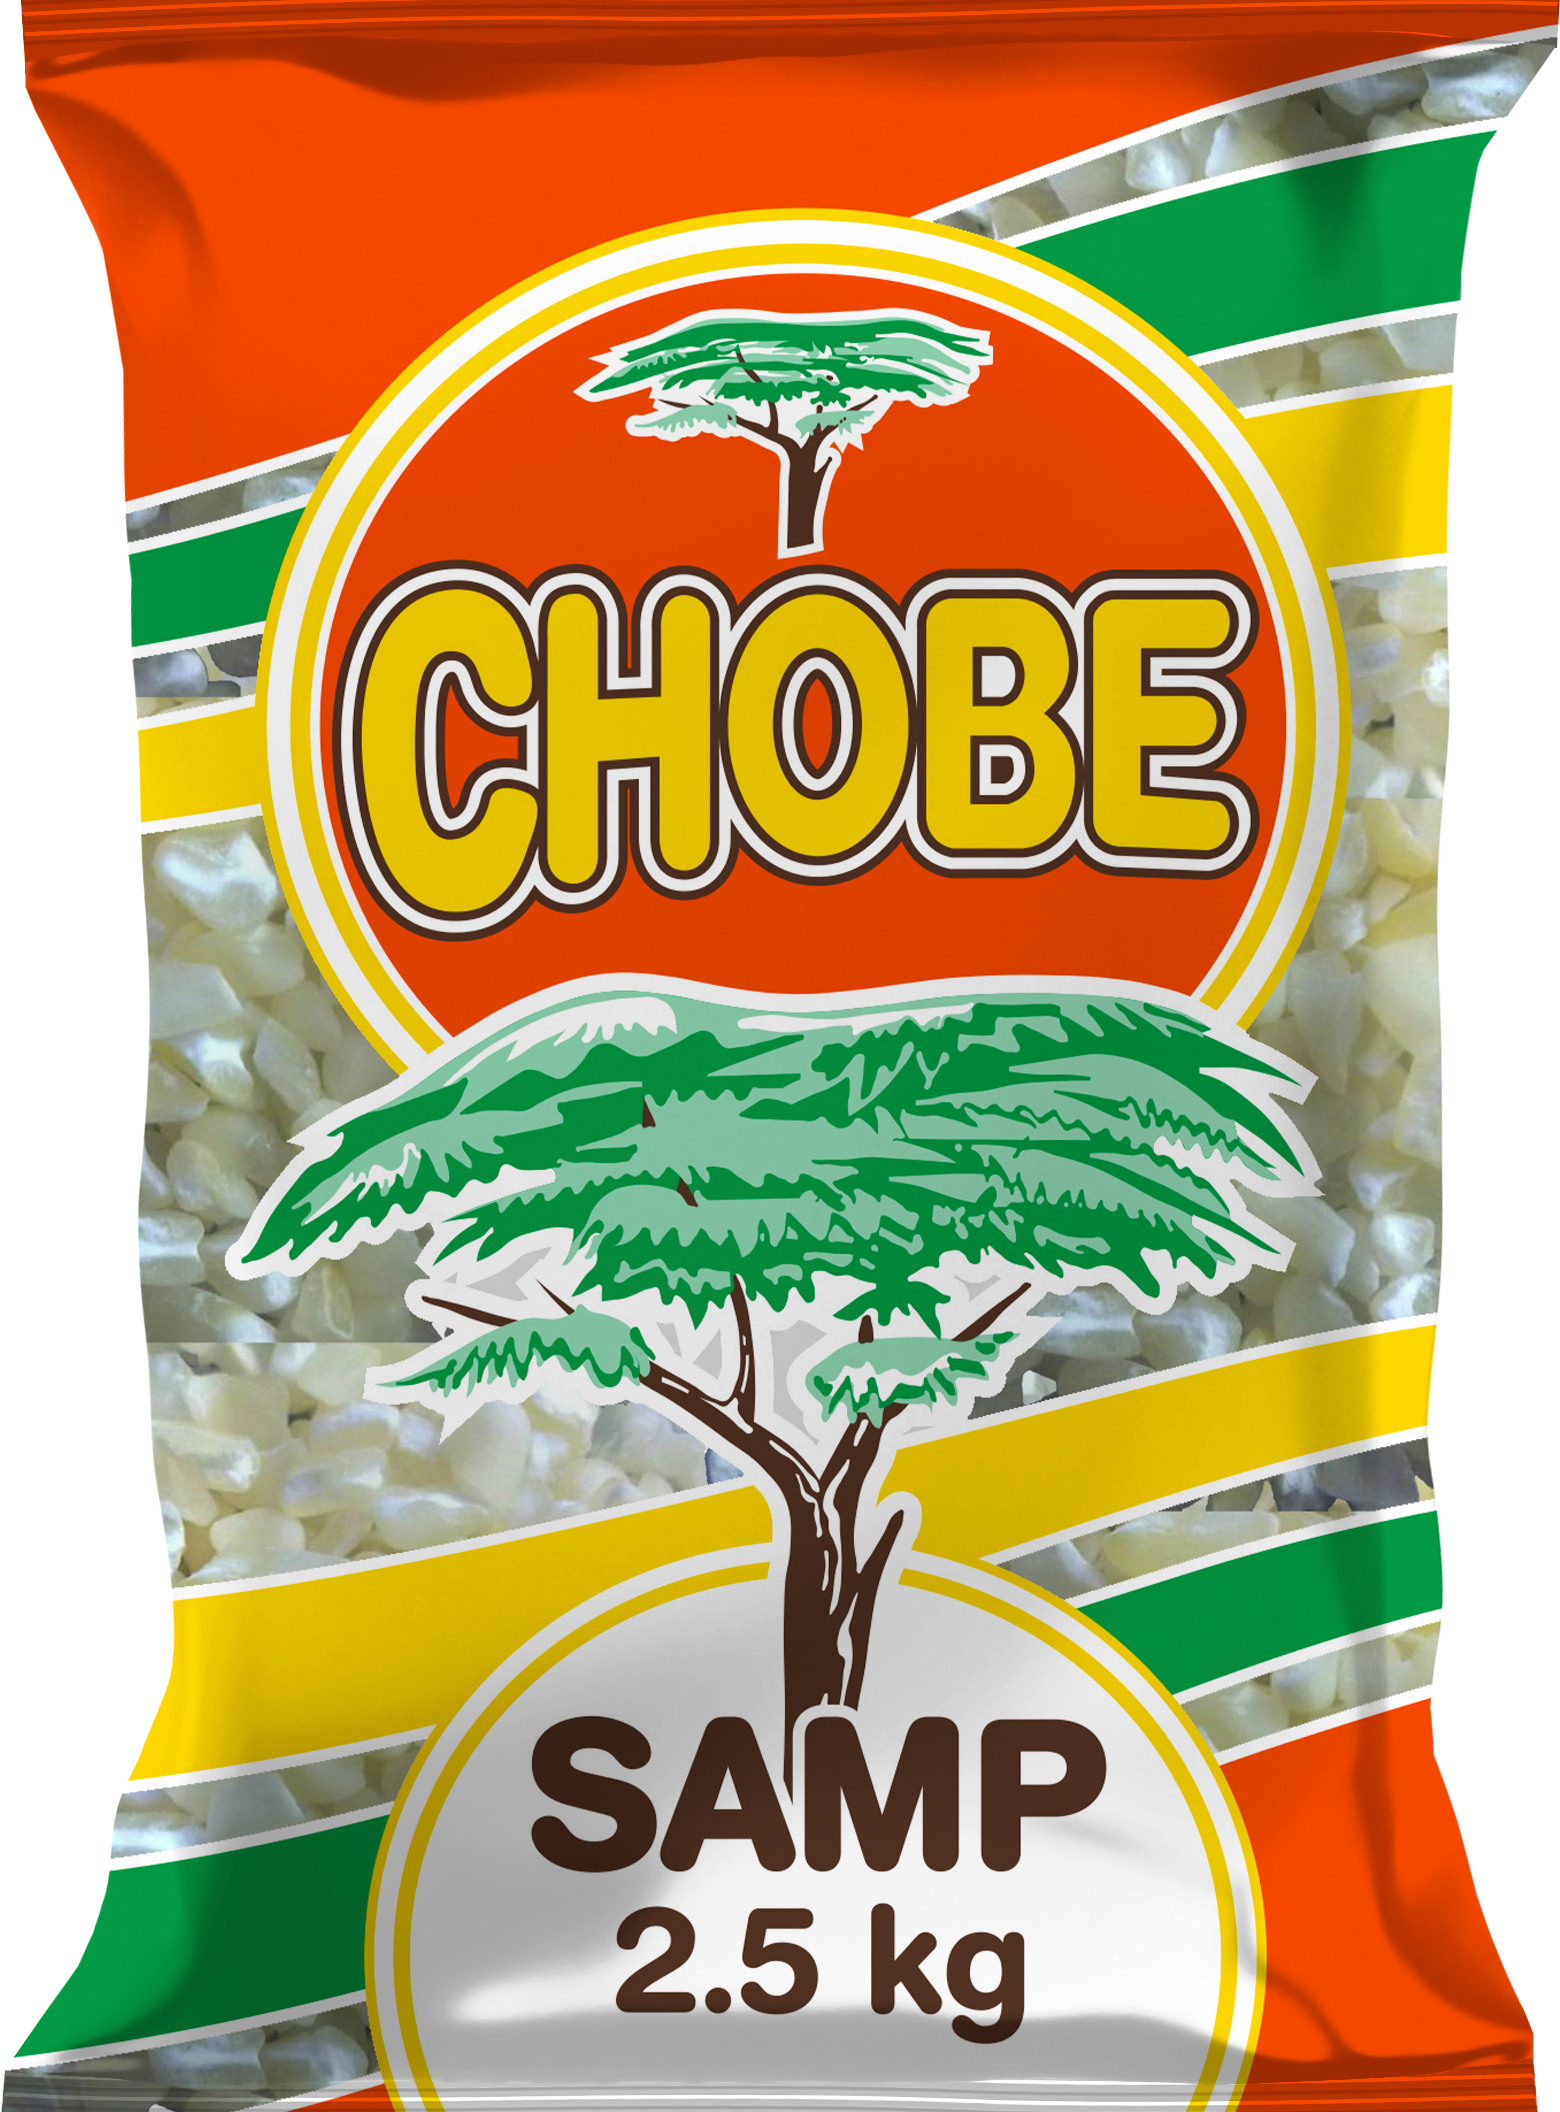 Chobe Samp 2.5 Kg